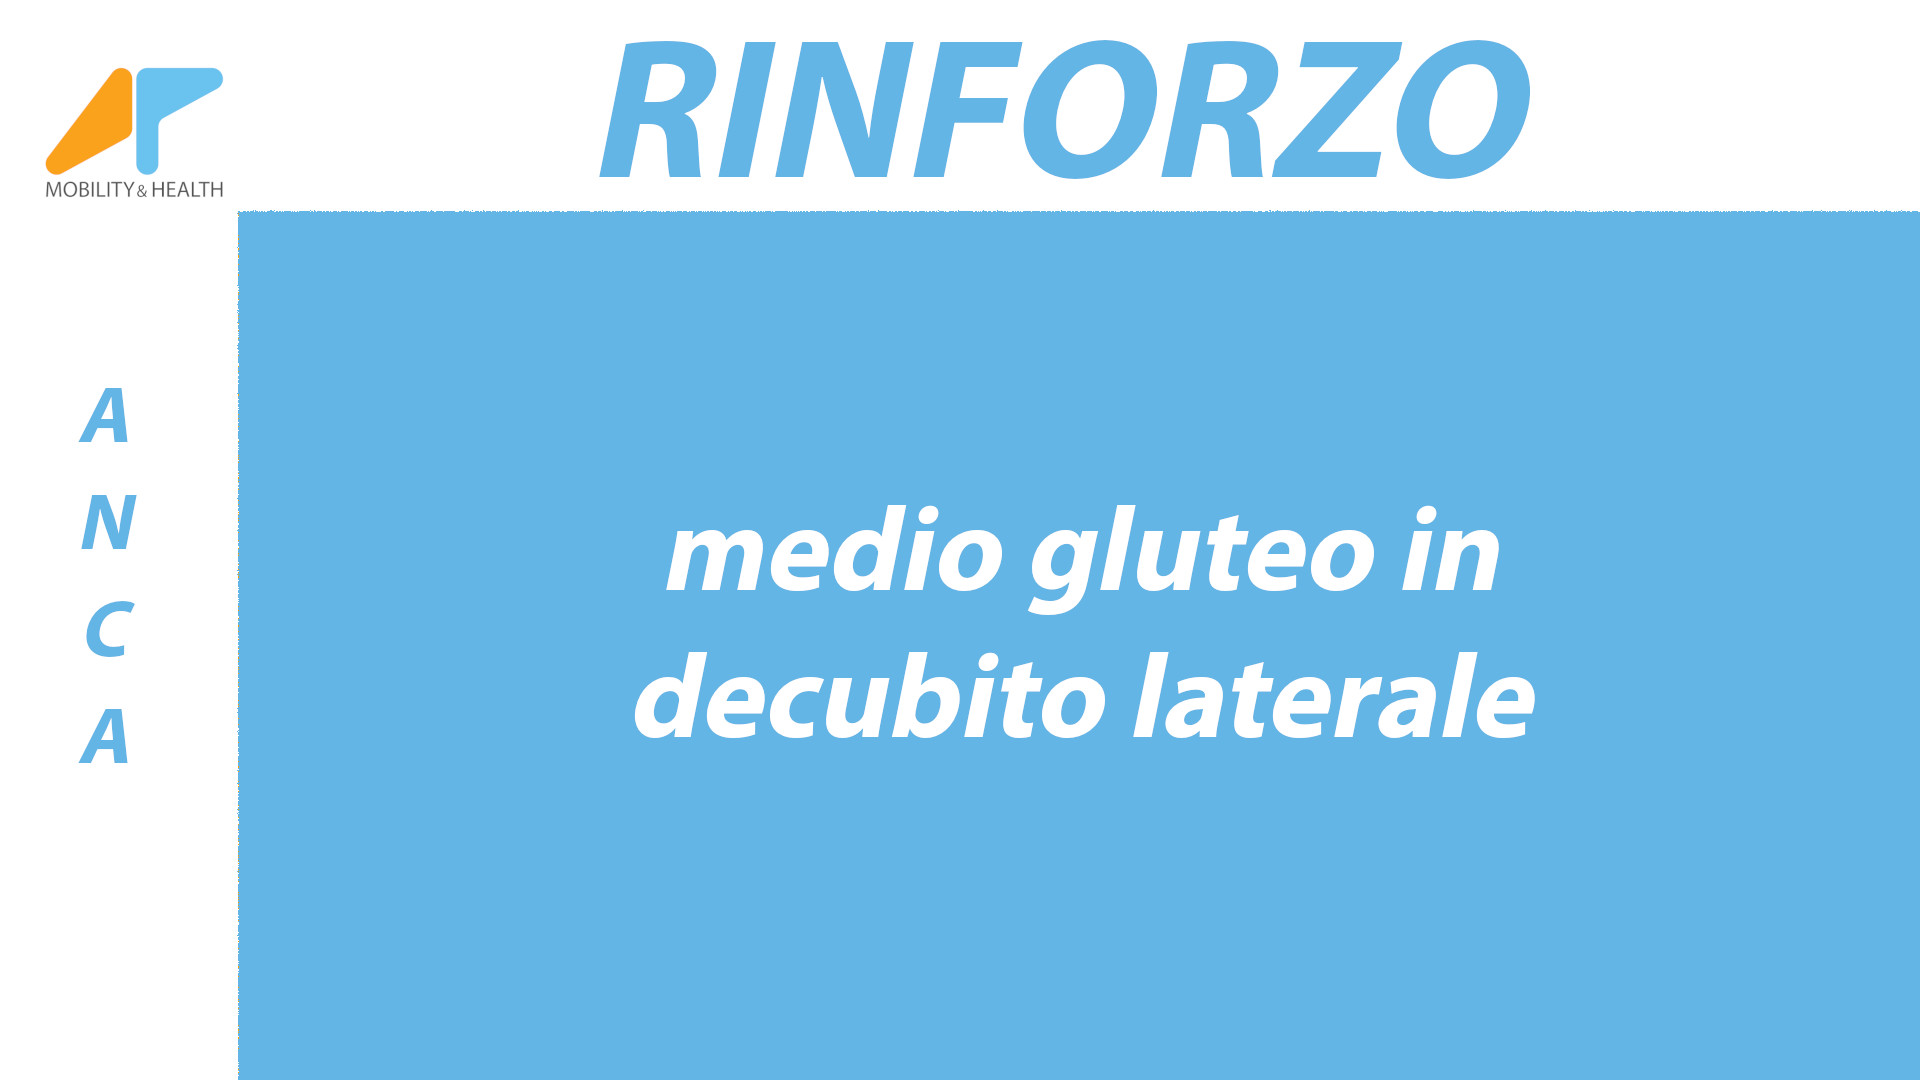 Rinforzo-anca-medio-gluteo-decubito-laterale Alessandro Paoluzzi Fisioterapista Ud